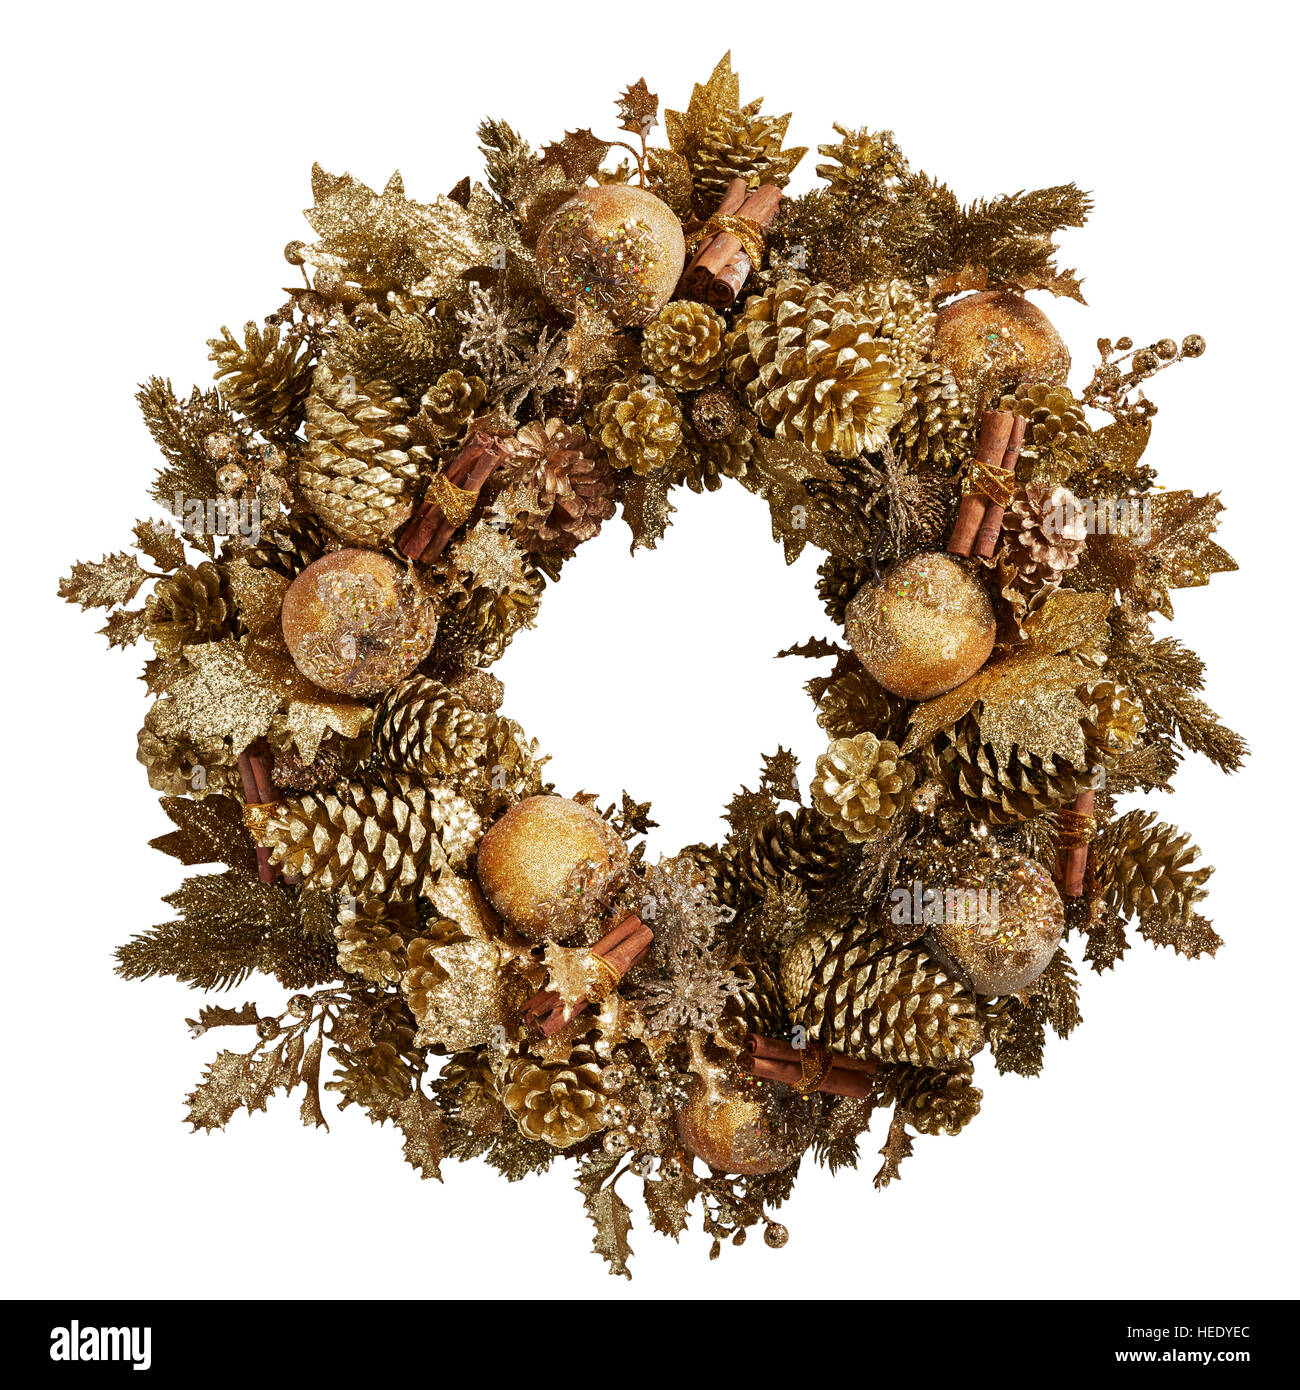 Decoración navideña con corona cortada en una puerta festiva elegante circular tradicional redonda festiva Foto de stock